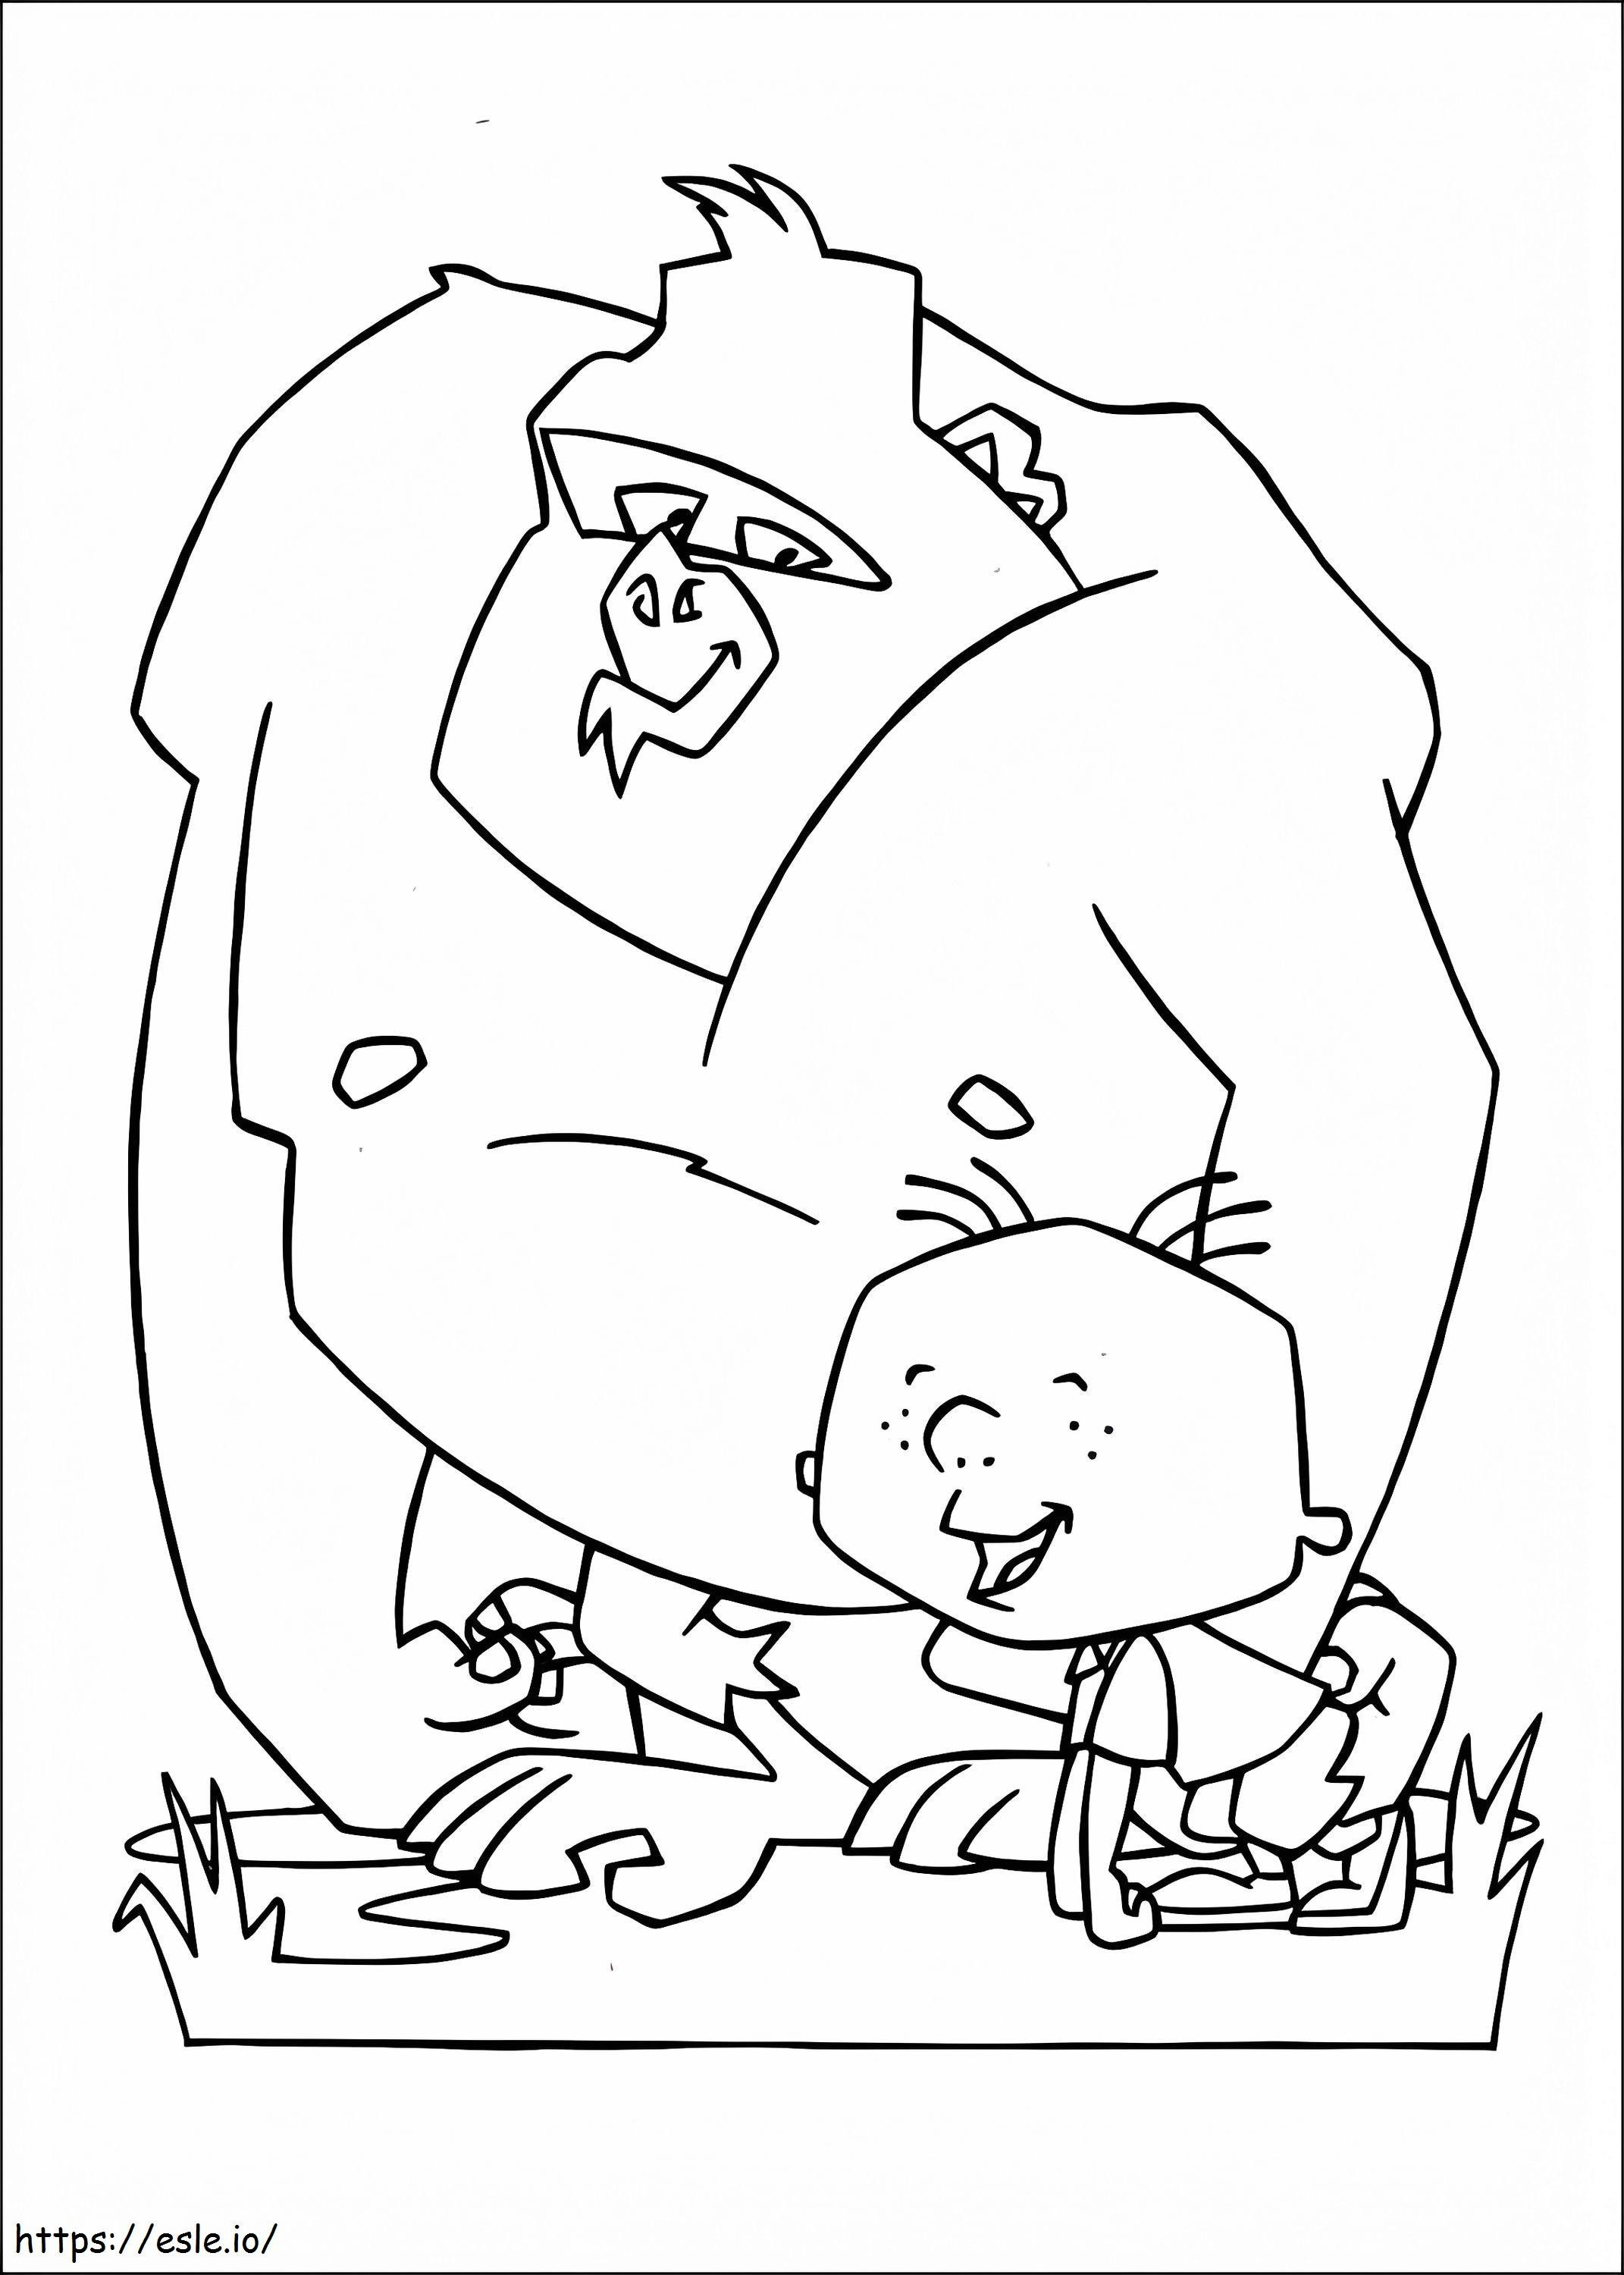 Stanley și Gorila de colorat